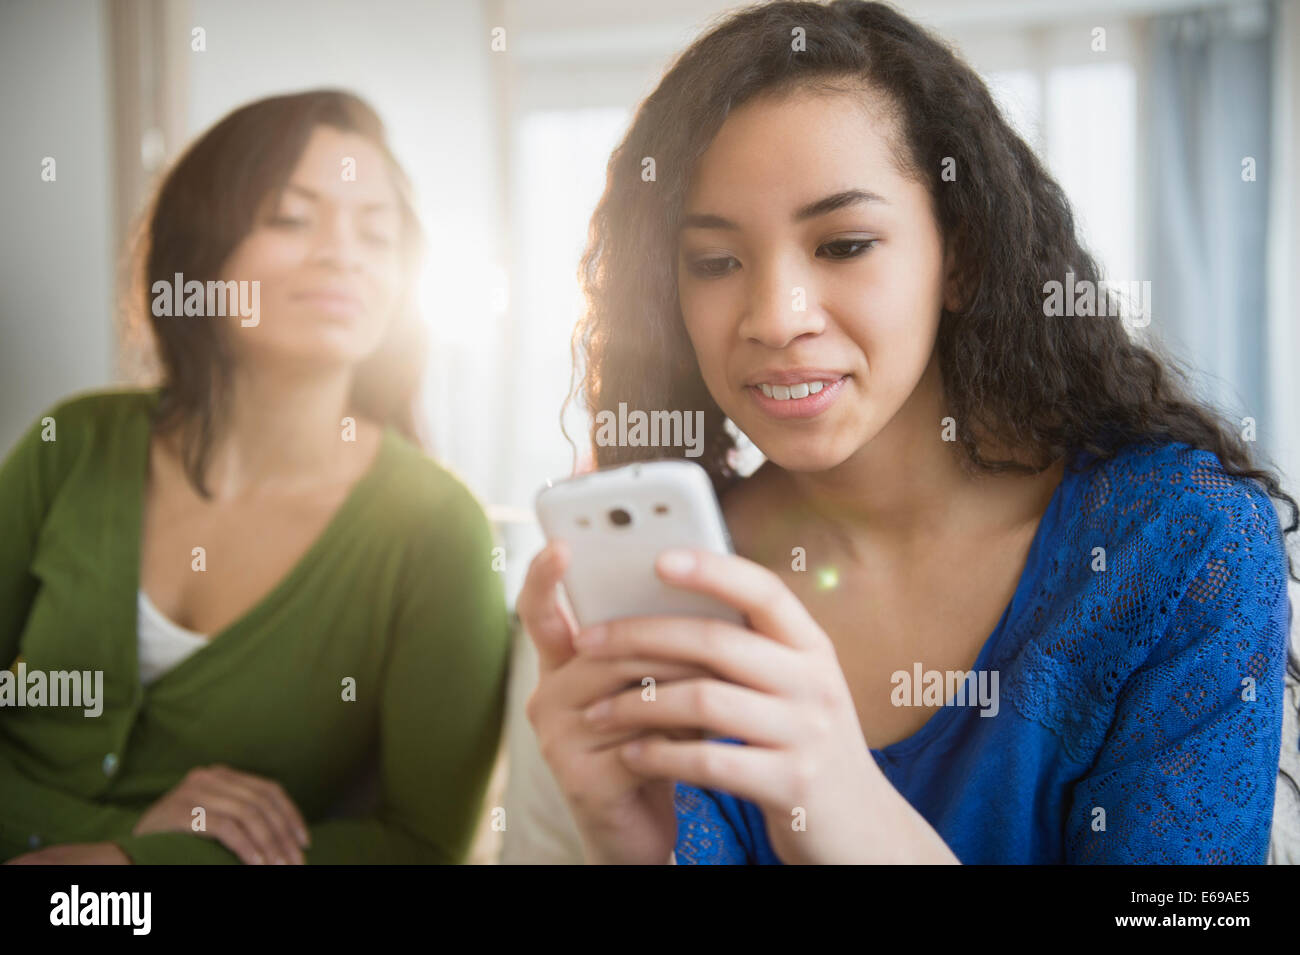 Madre Hija viendo utilizar teléfono celular Foto de stock